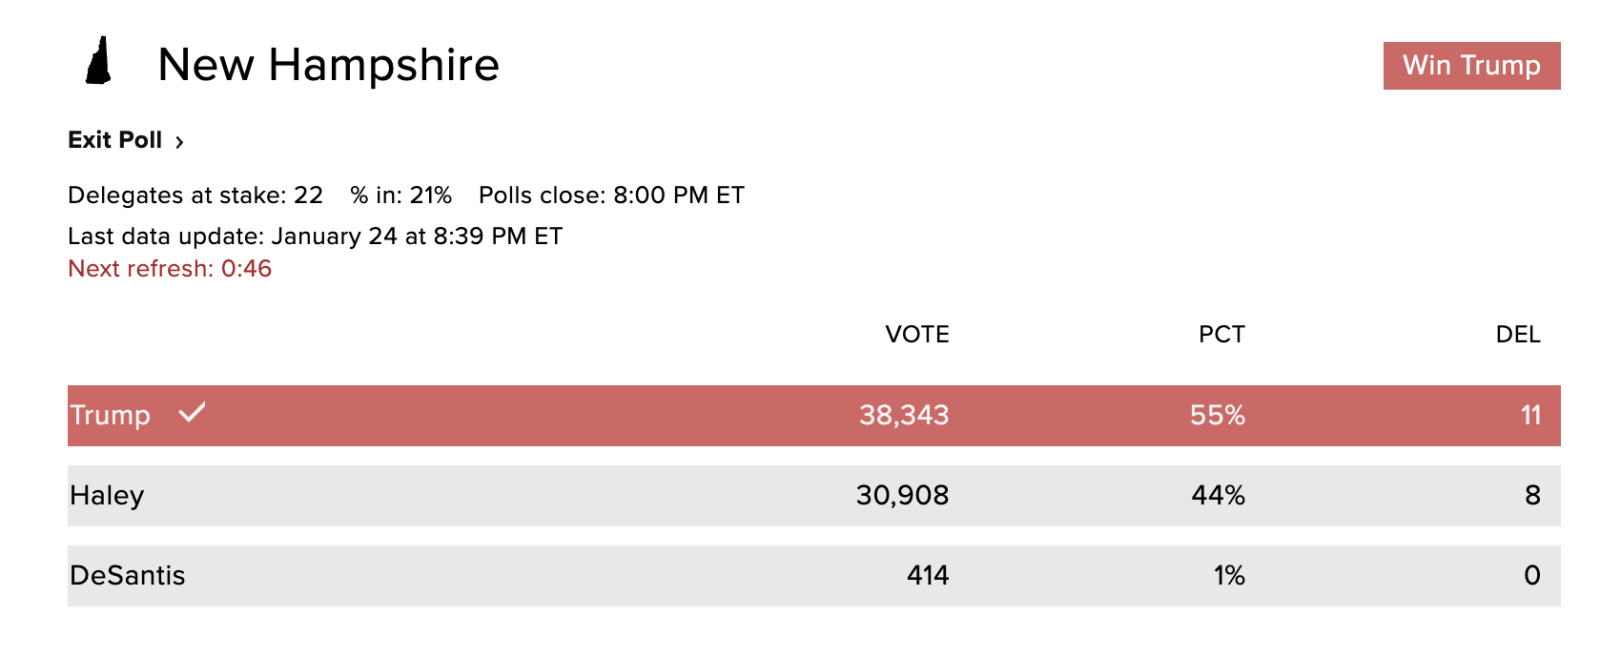 Kết quả bầu cử sơ bộ của đảng Cộng hoà tại bang New Hampshire vào lúc 8 giờ 40 phút sáng 24/1 trên trang web của CBS News